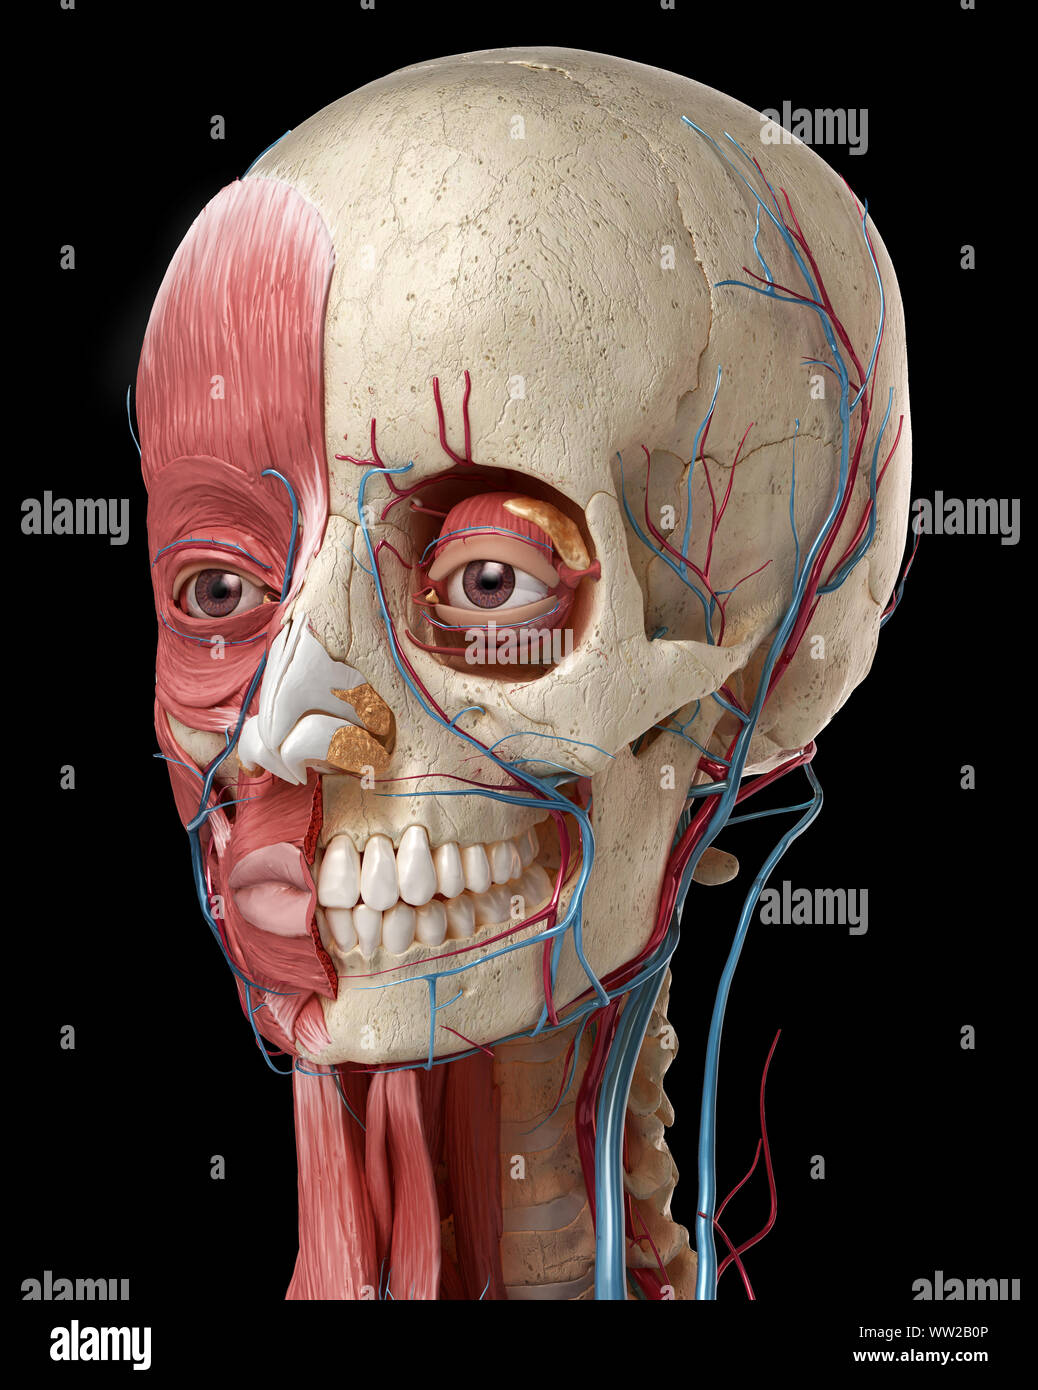 Die menschliche Anatomie 3d-Abbildung der Kopf mit dem Schädel, Auge Glühlampen, Gefäße und Muskeln, auf schwarzem Hintergrund. Stockfoto